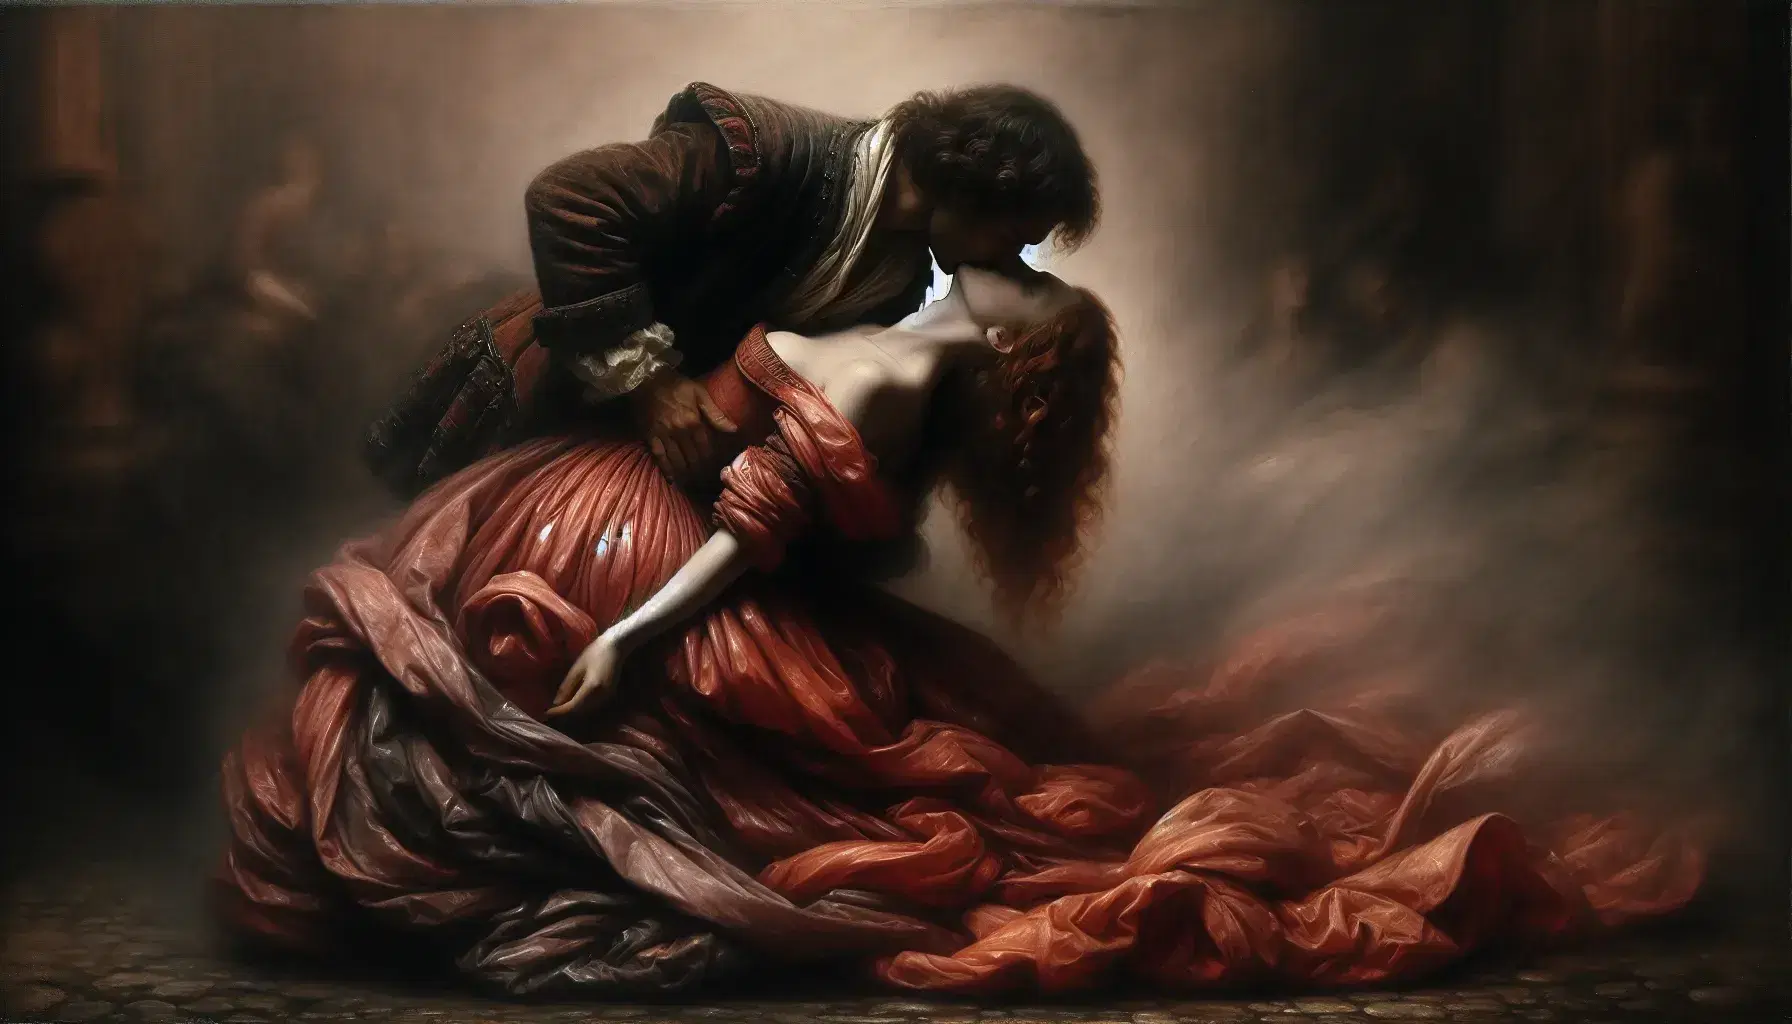 Riproduzione fotografica del dipinto 'Il Bacio' di Francesco Hayez con due figure in abiti storici avvinghiate in un appassionato bacio.